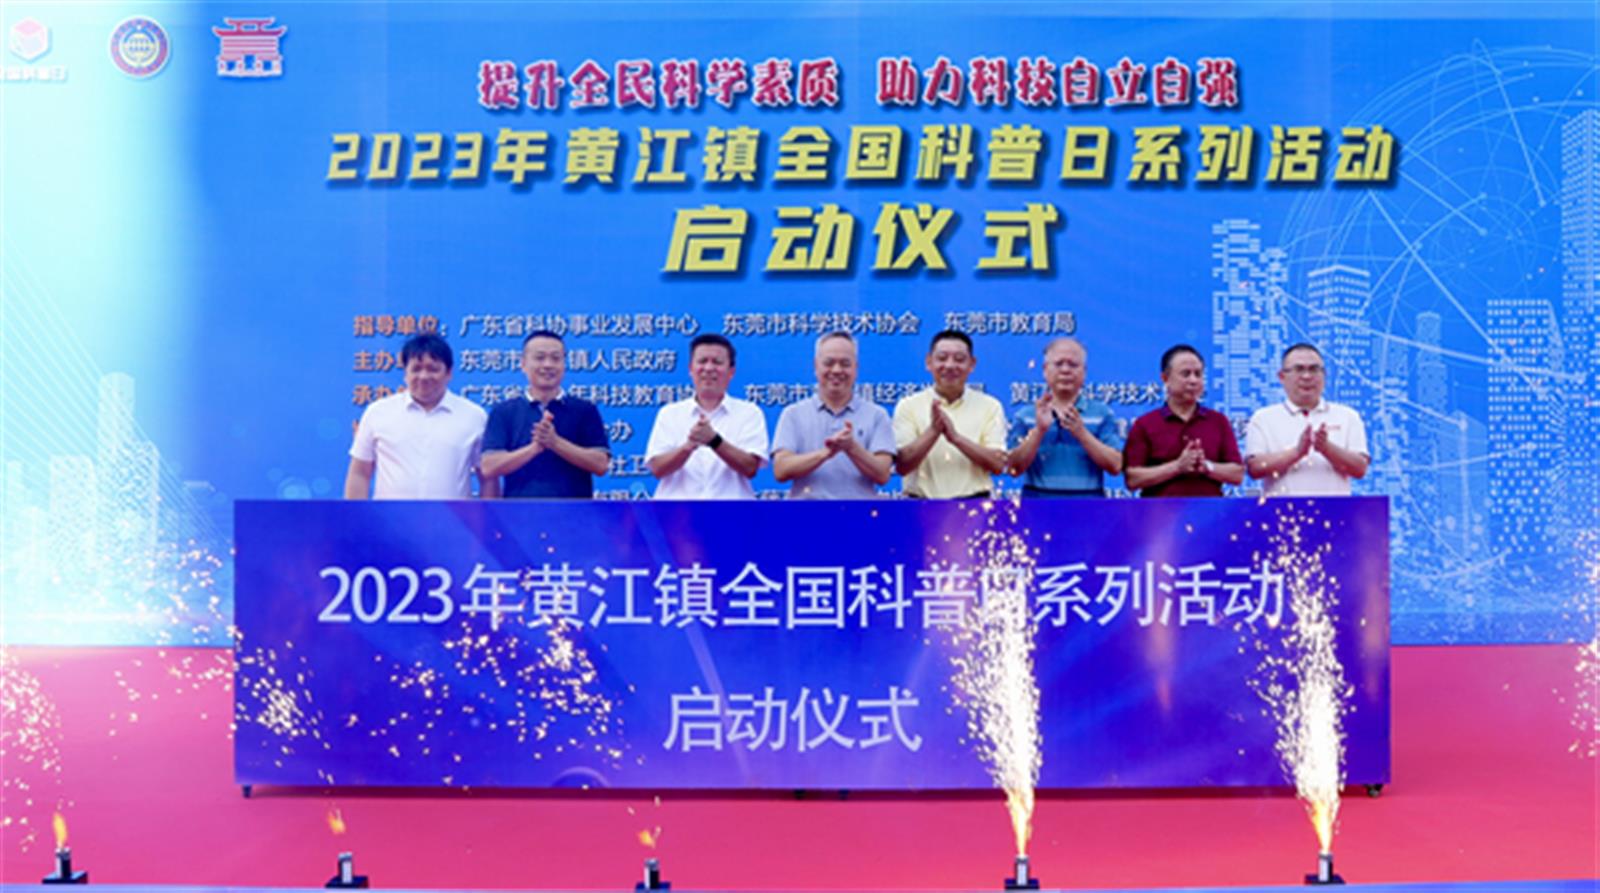 2023年东莞市黄江镇全国科普日系列活动举行